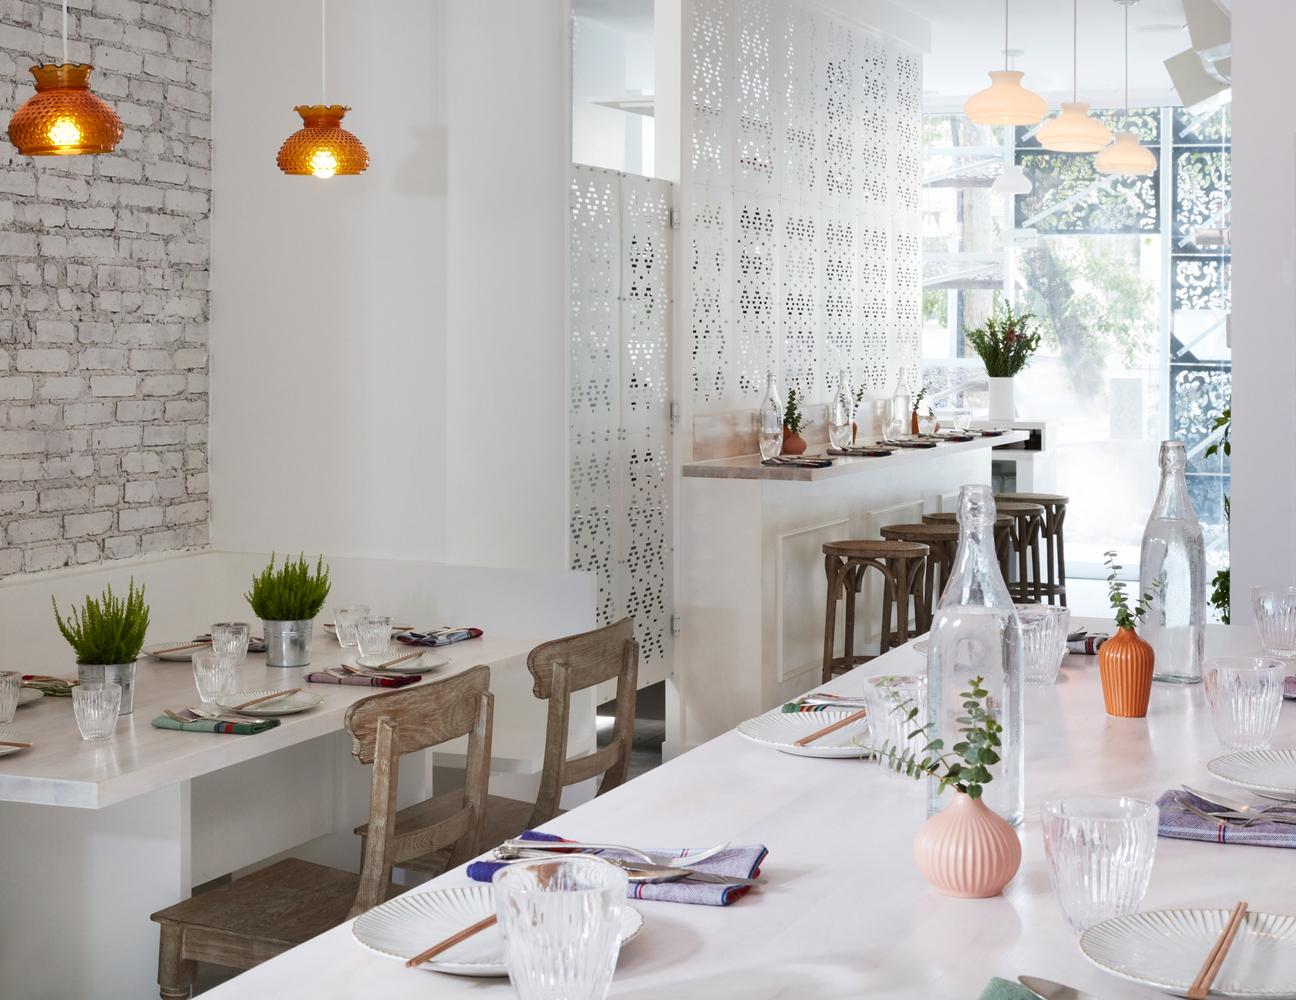 紐約新潮緬甸菜餐廳 鏤空雕花幕牆帶來視覺體驗